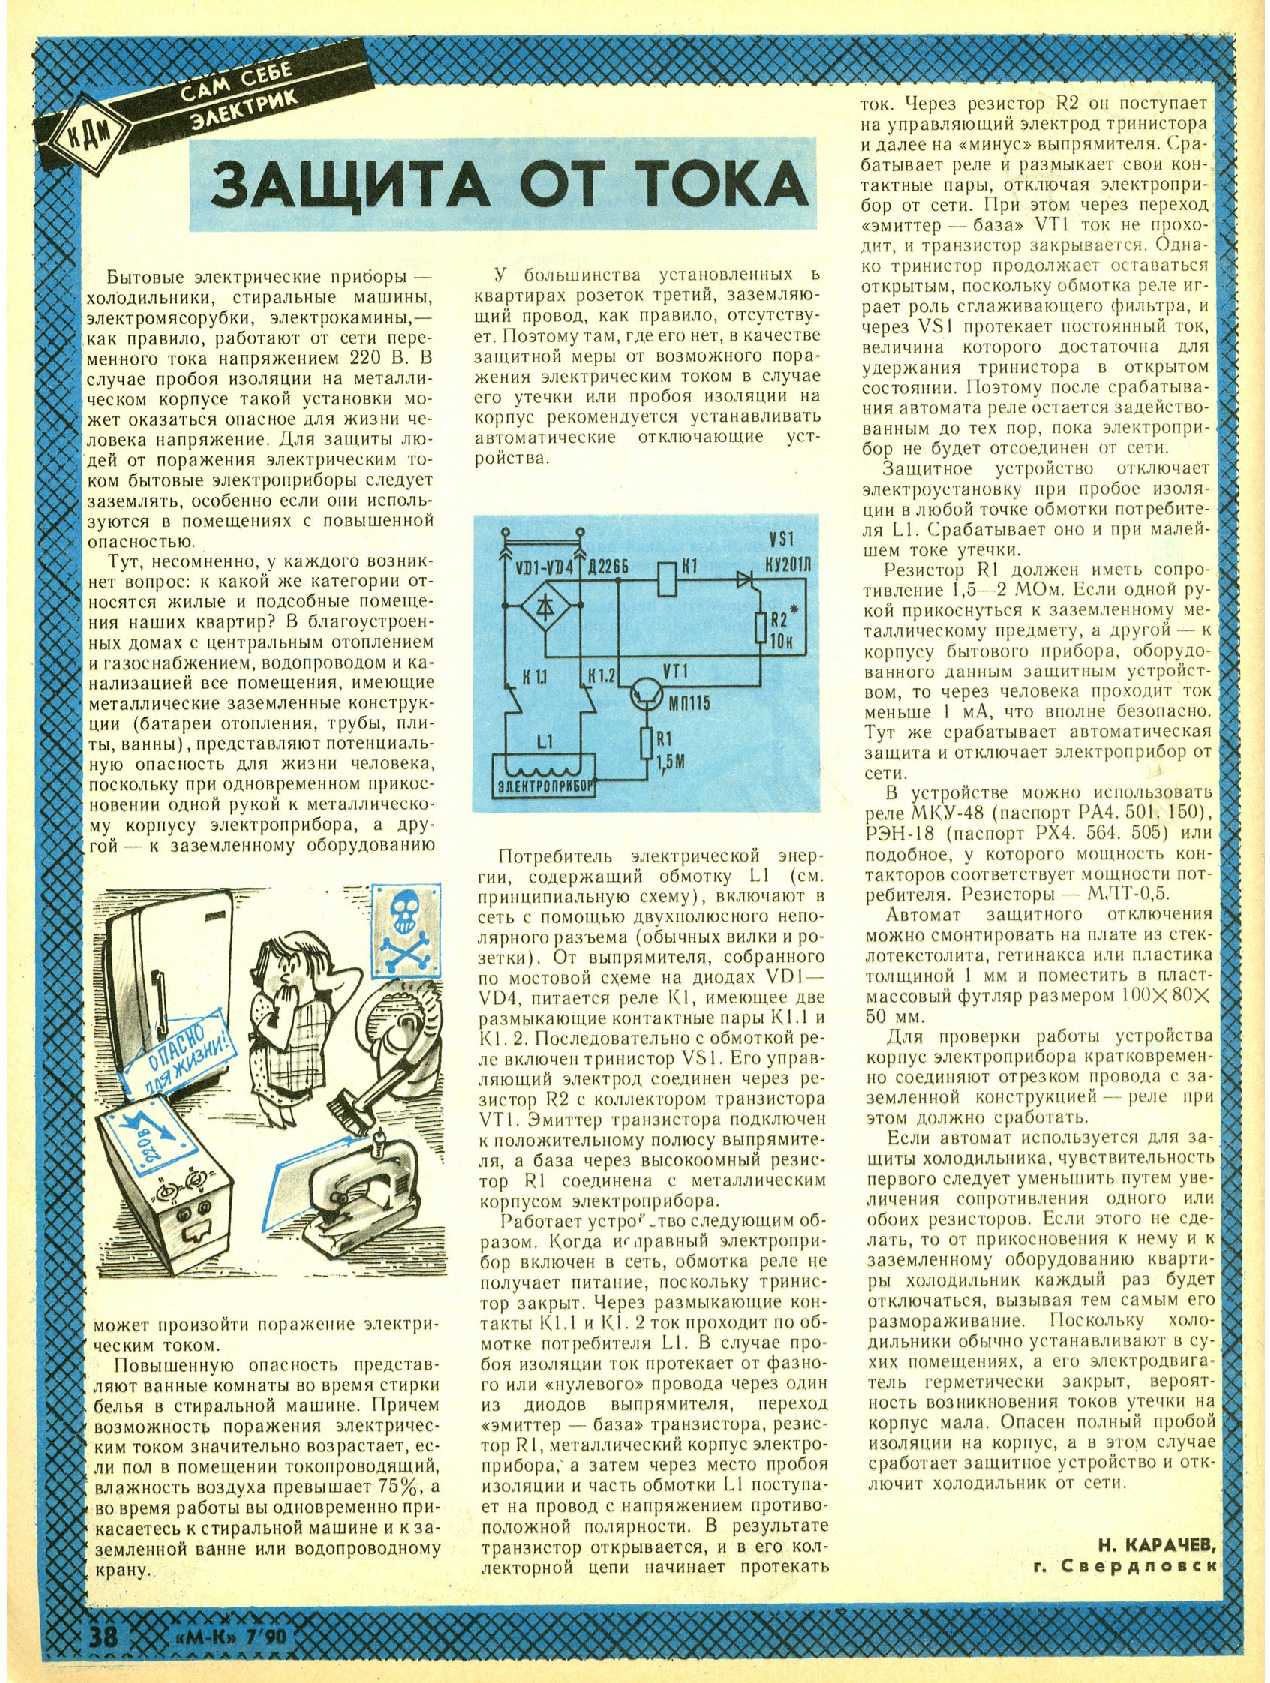 МК 7, 1990, 38 c.